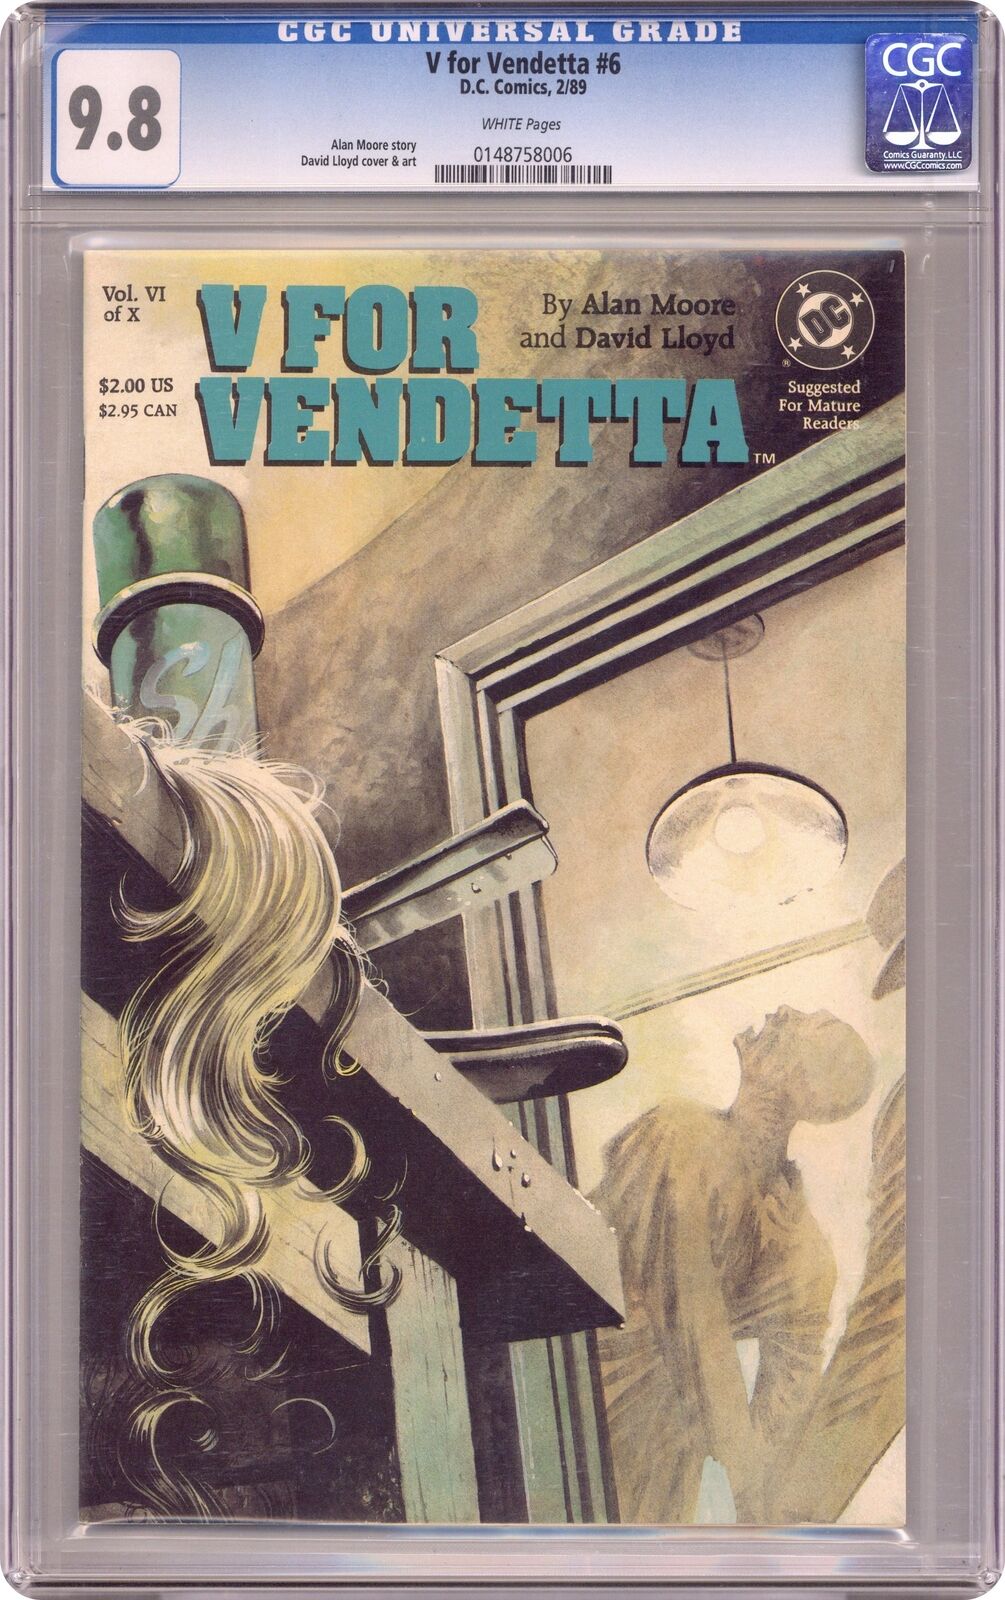 V for Vendetta #6 CGC 9.8 1988 0148758006